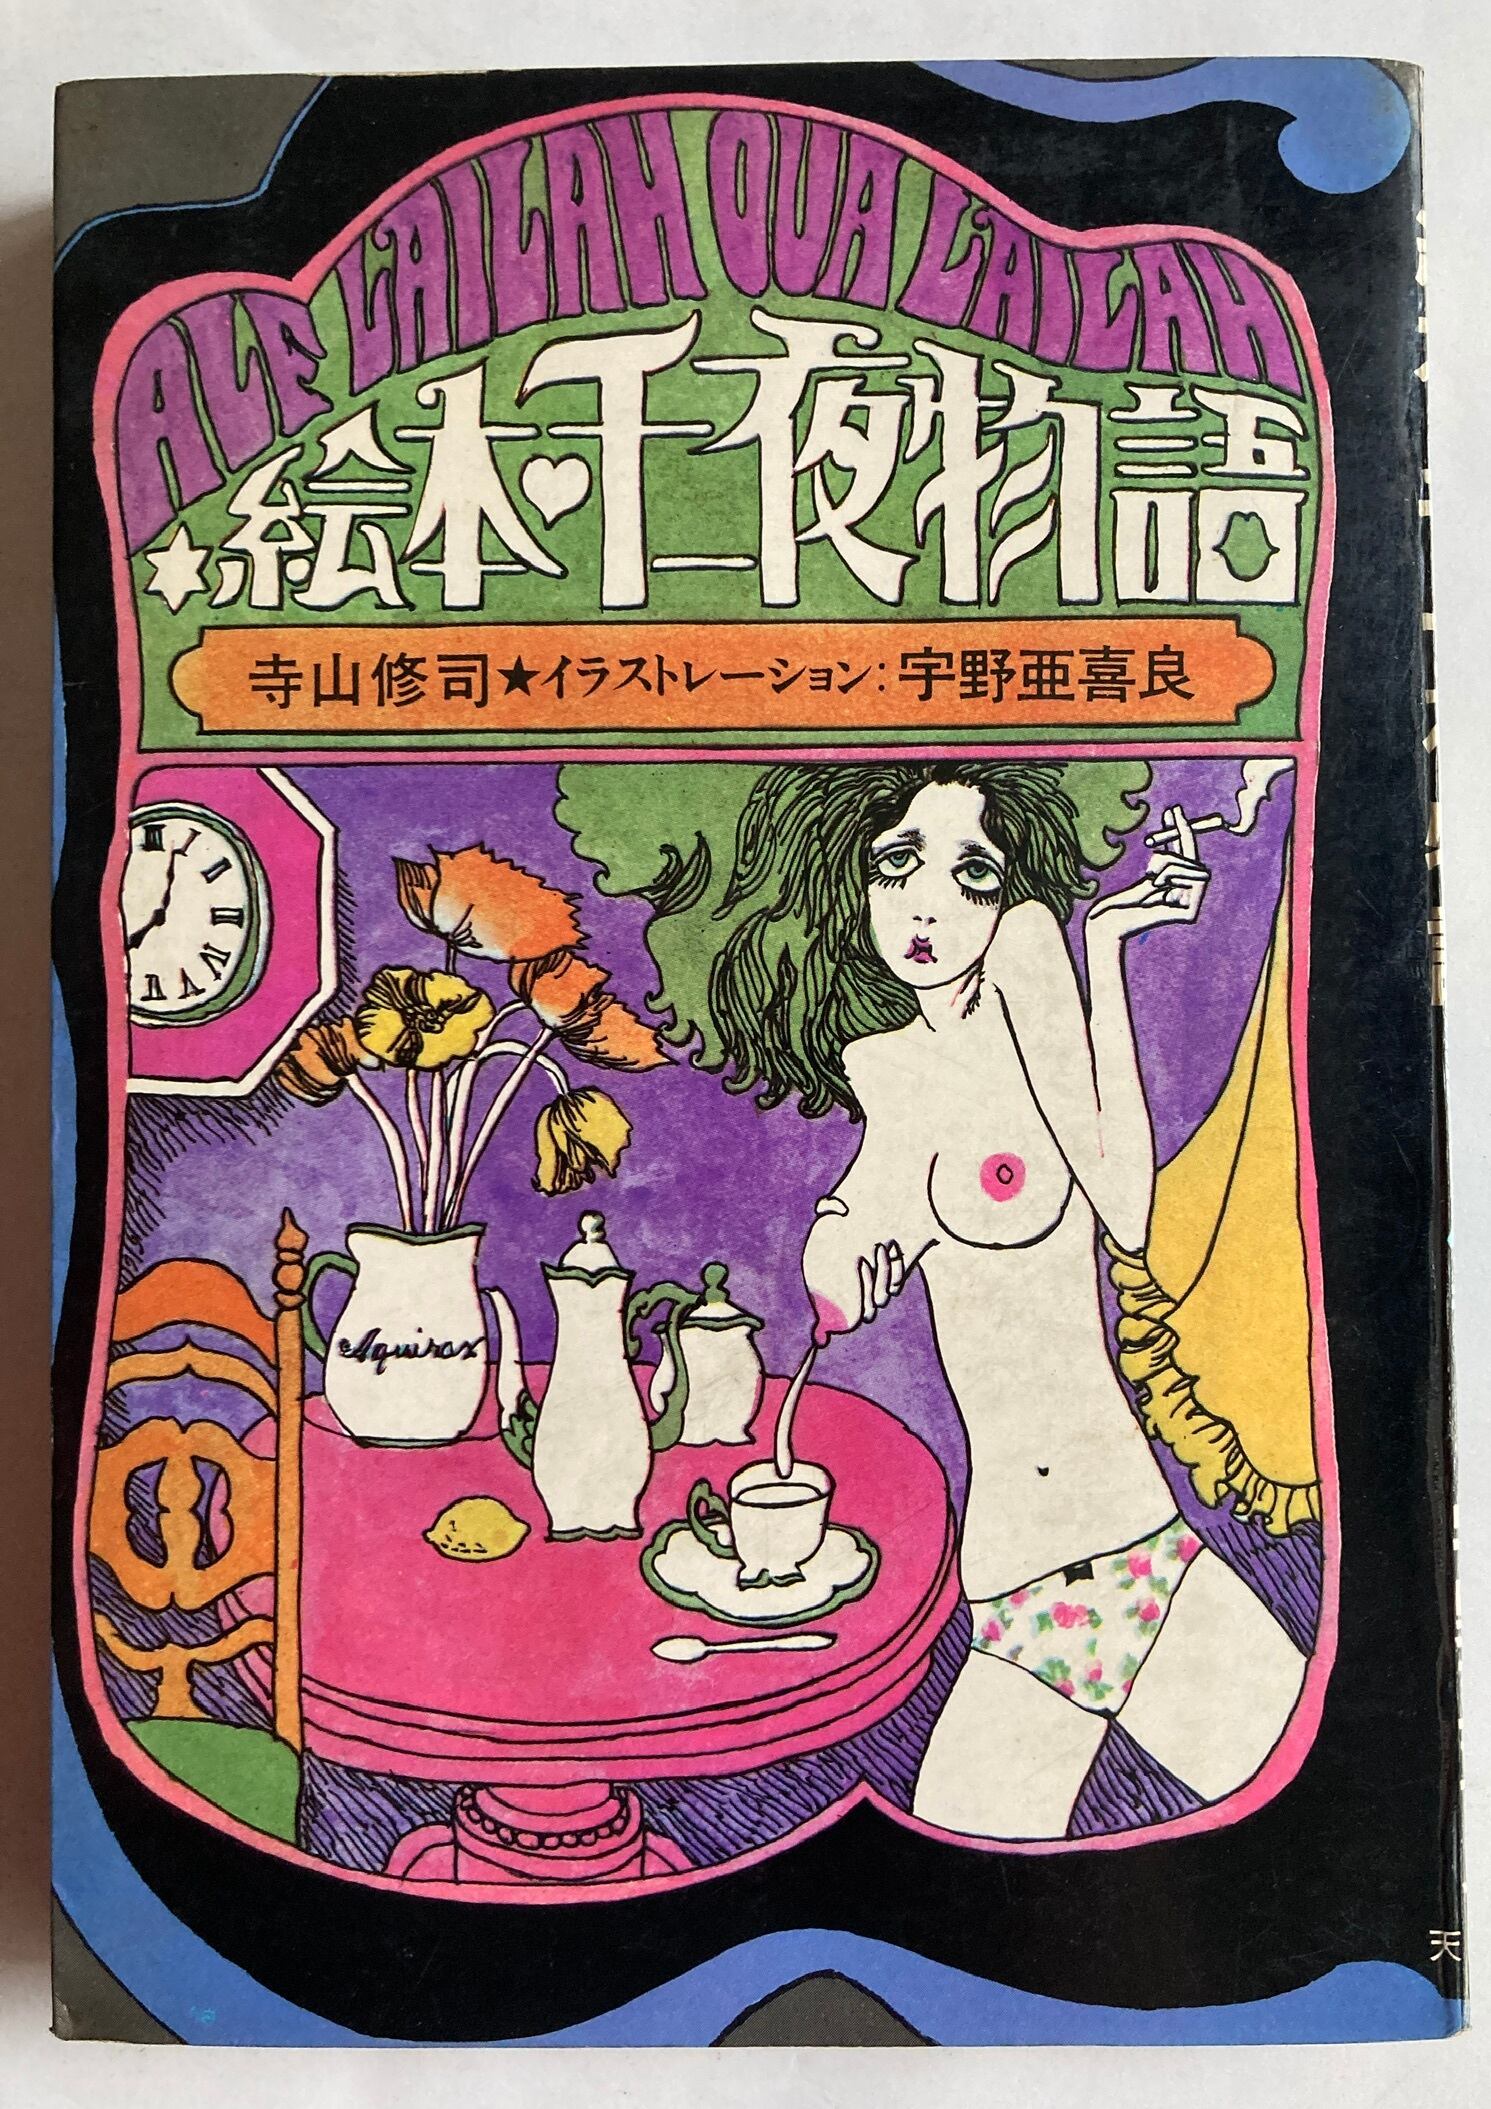 宇野亜喜良 絵本・千一夜物語 寺山修司 1968年 天声出版 | トムズボックス